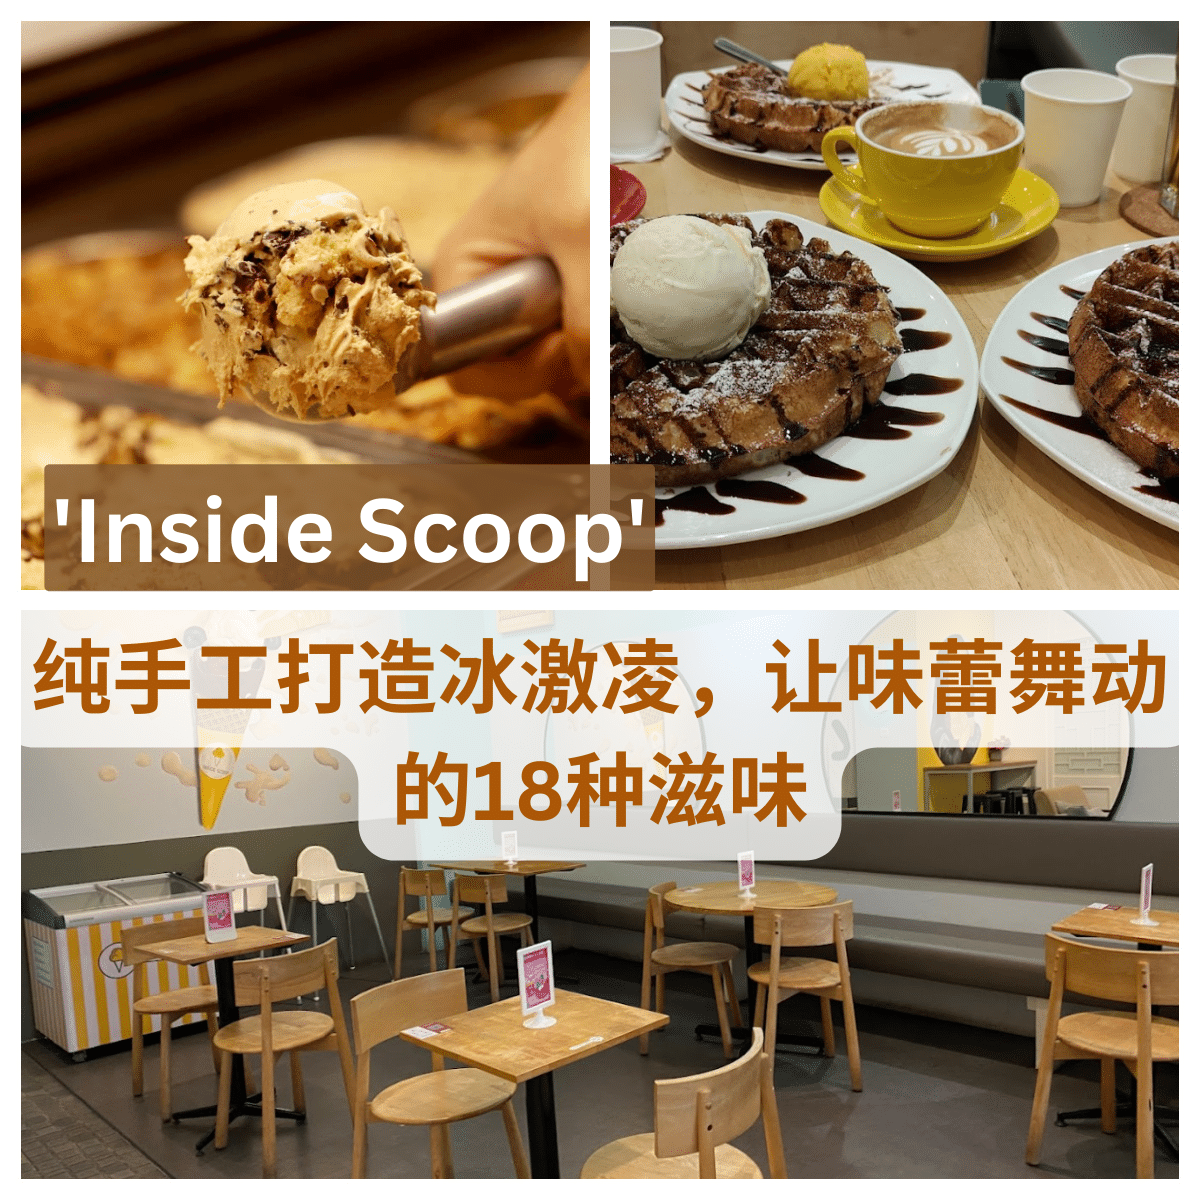 纯天然、手工制作 – 来” Inside Scoop “品尝真正的冰淇淋！